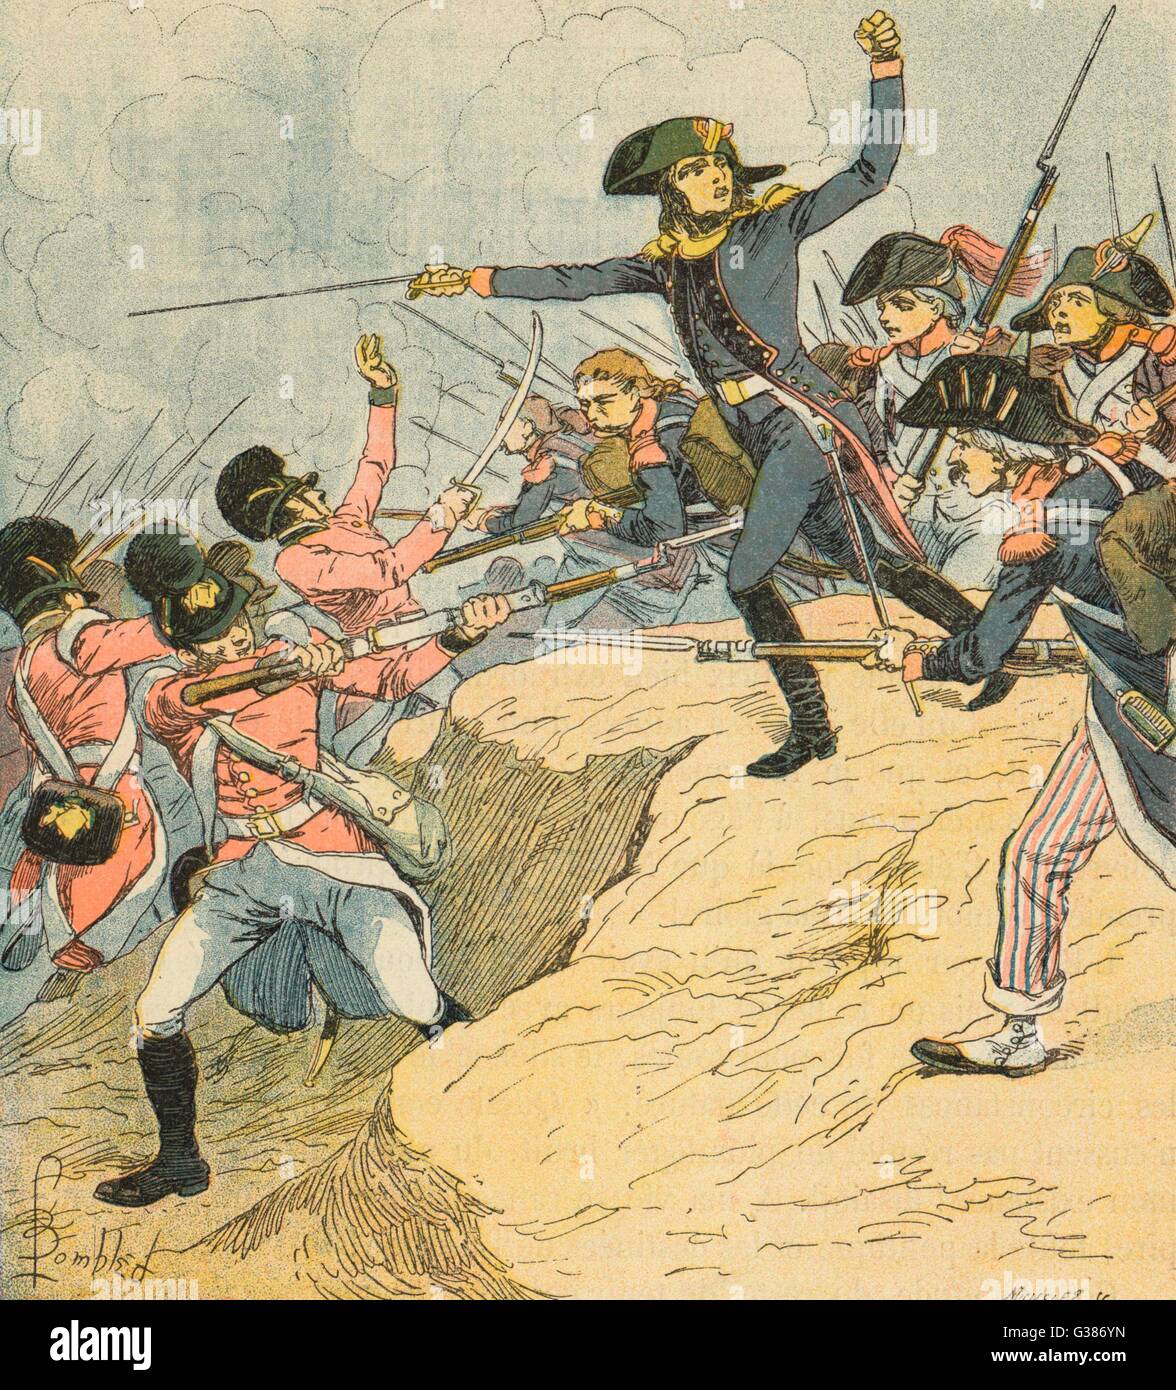 Napoleon wird verwundet, während der Belagerung von Toulon Datum: ca. Dezember 1793 Stockfoto